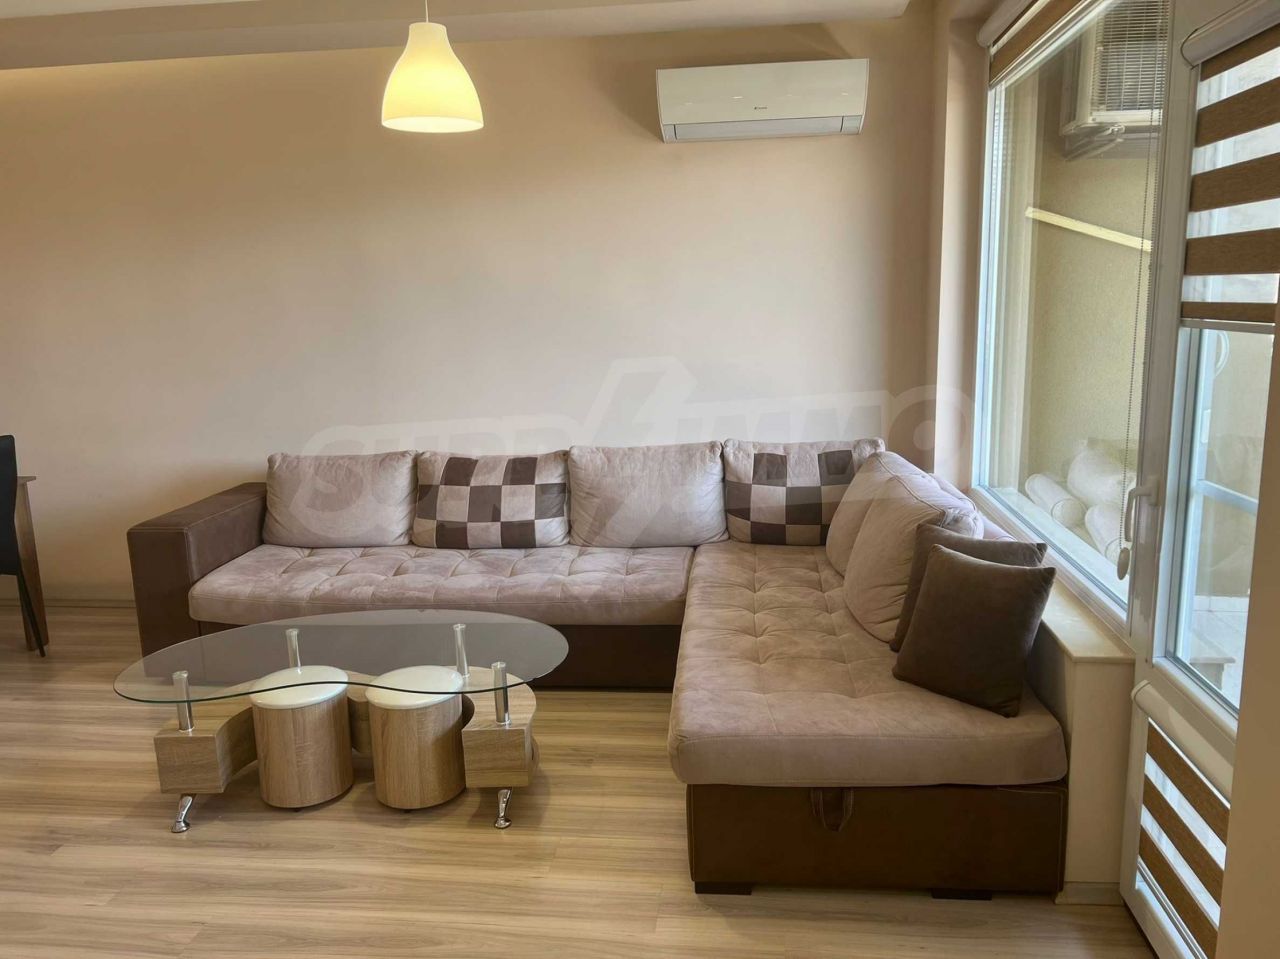 Apartment in Plovdiv, Bulgaria, 105 sq.m - picture 1